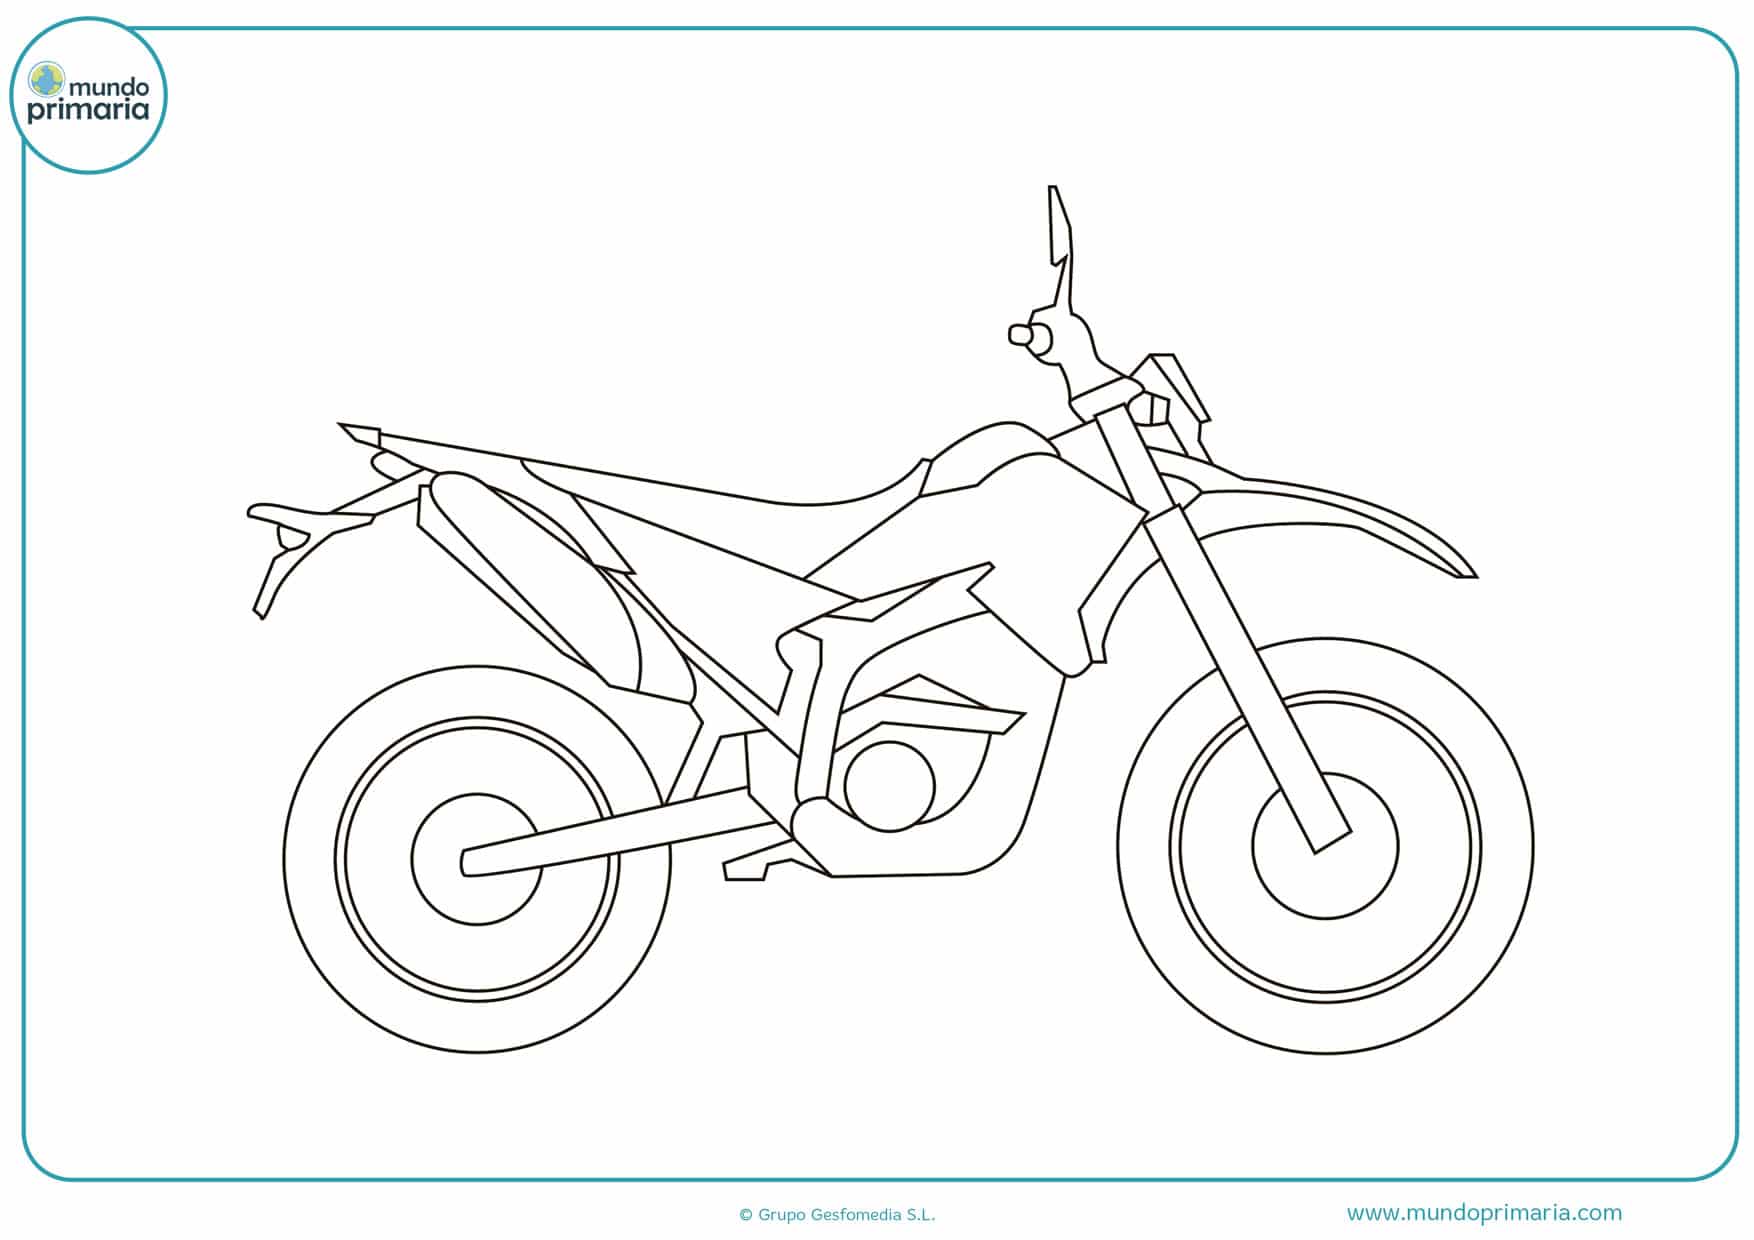 imprimir dibujos de motos para colorear